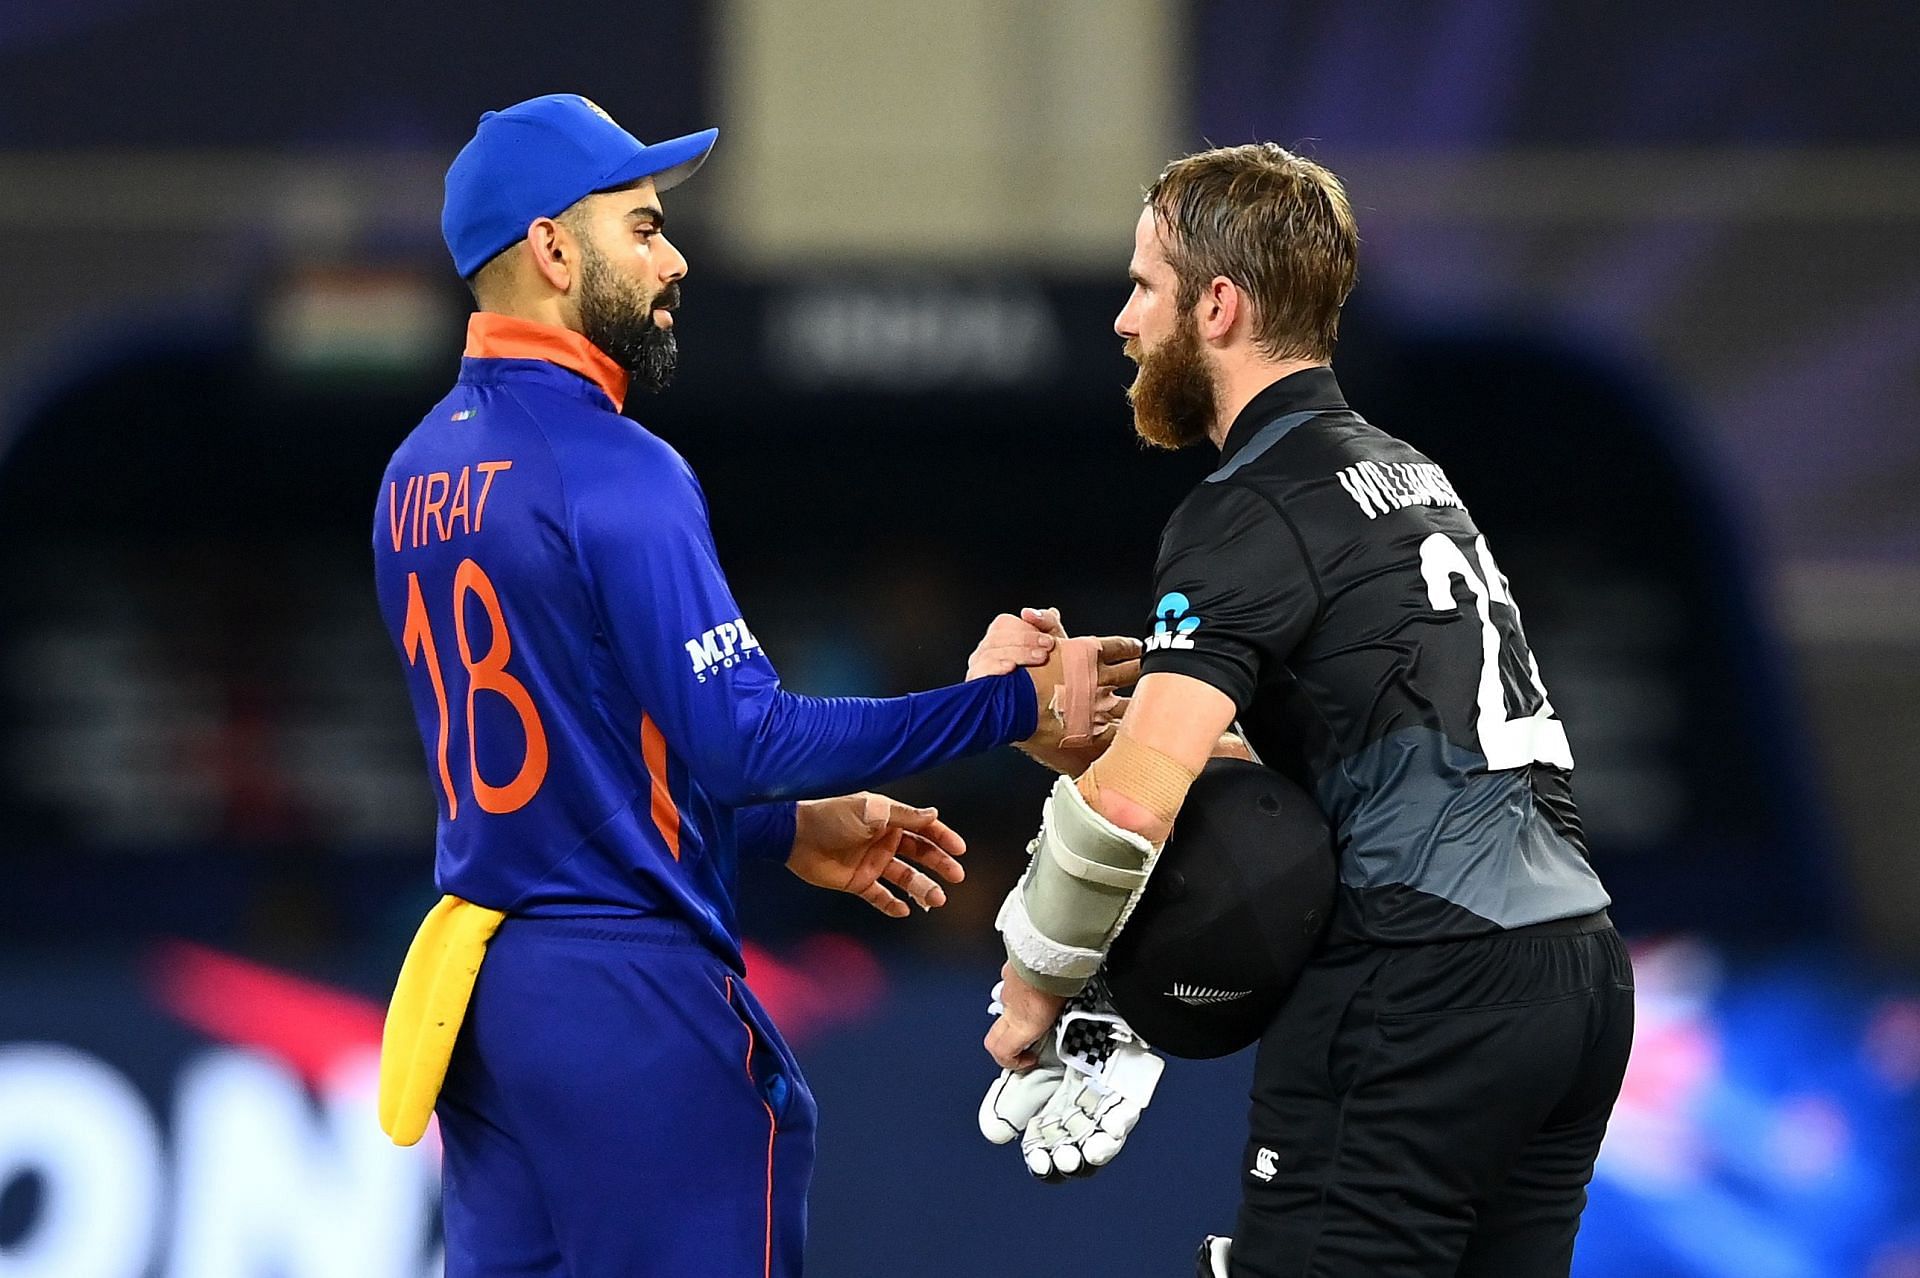 India v New Zealand T20I